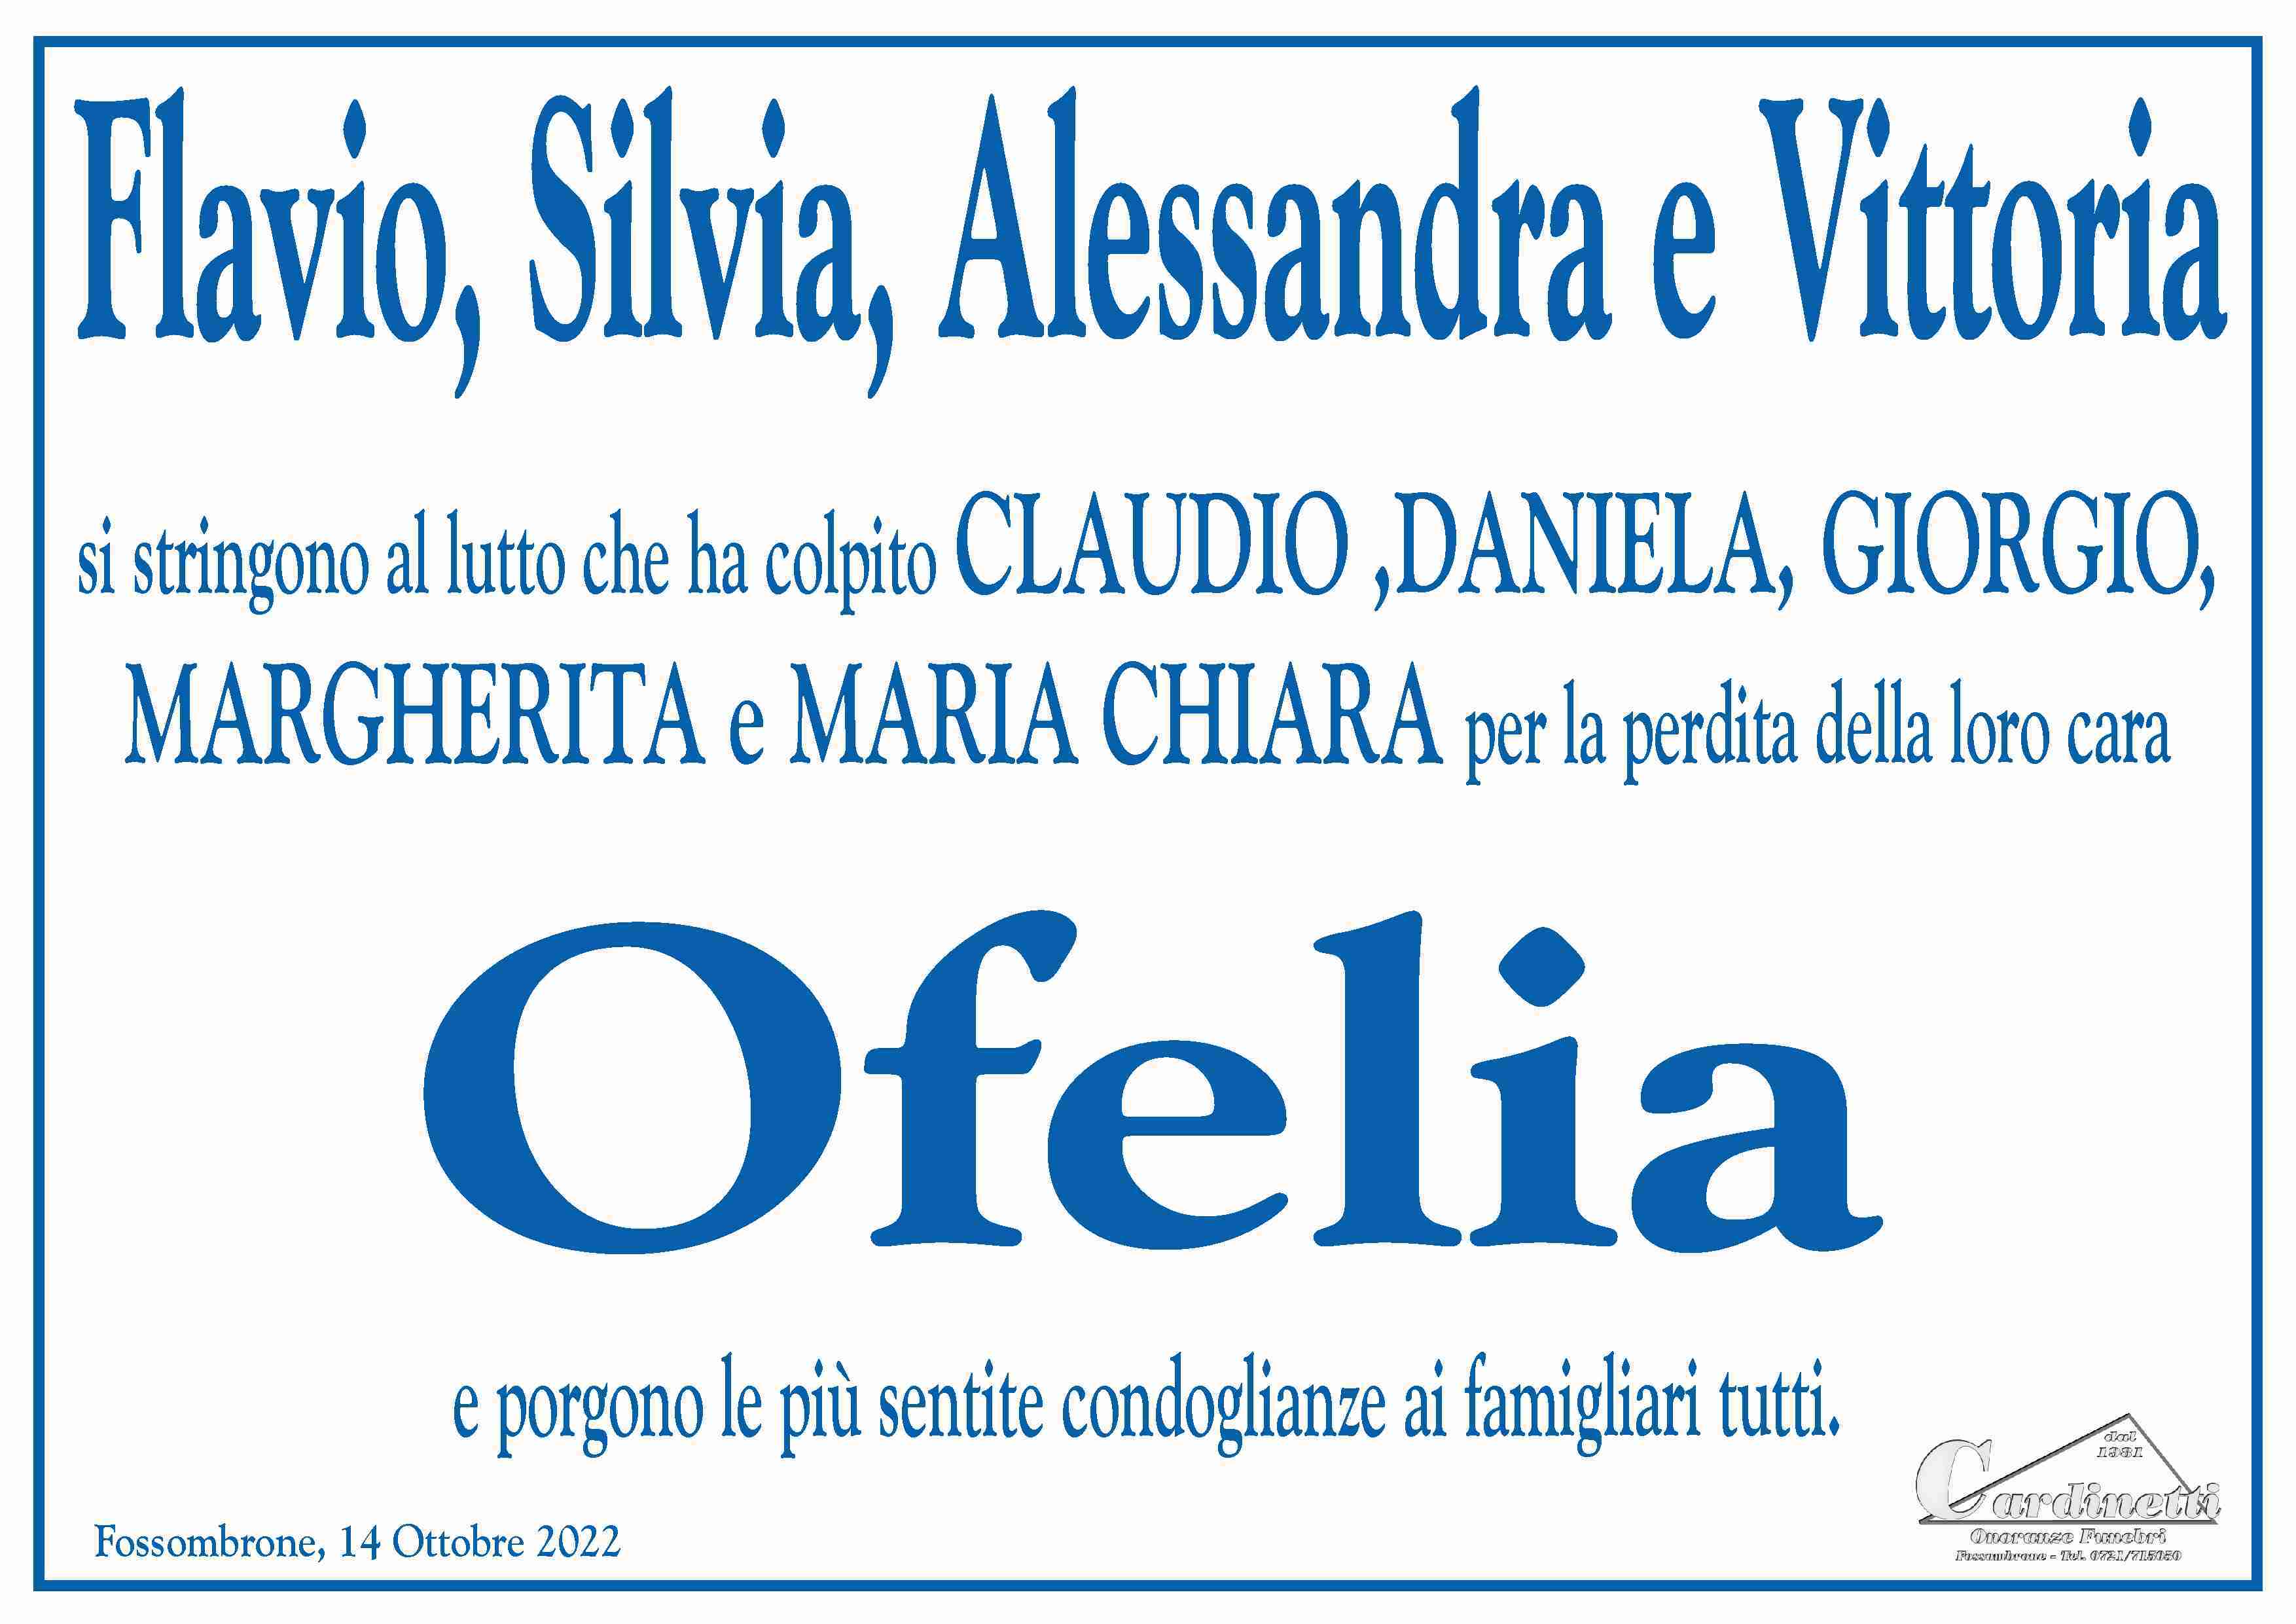 Ofelia Del Conte